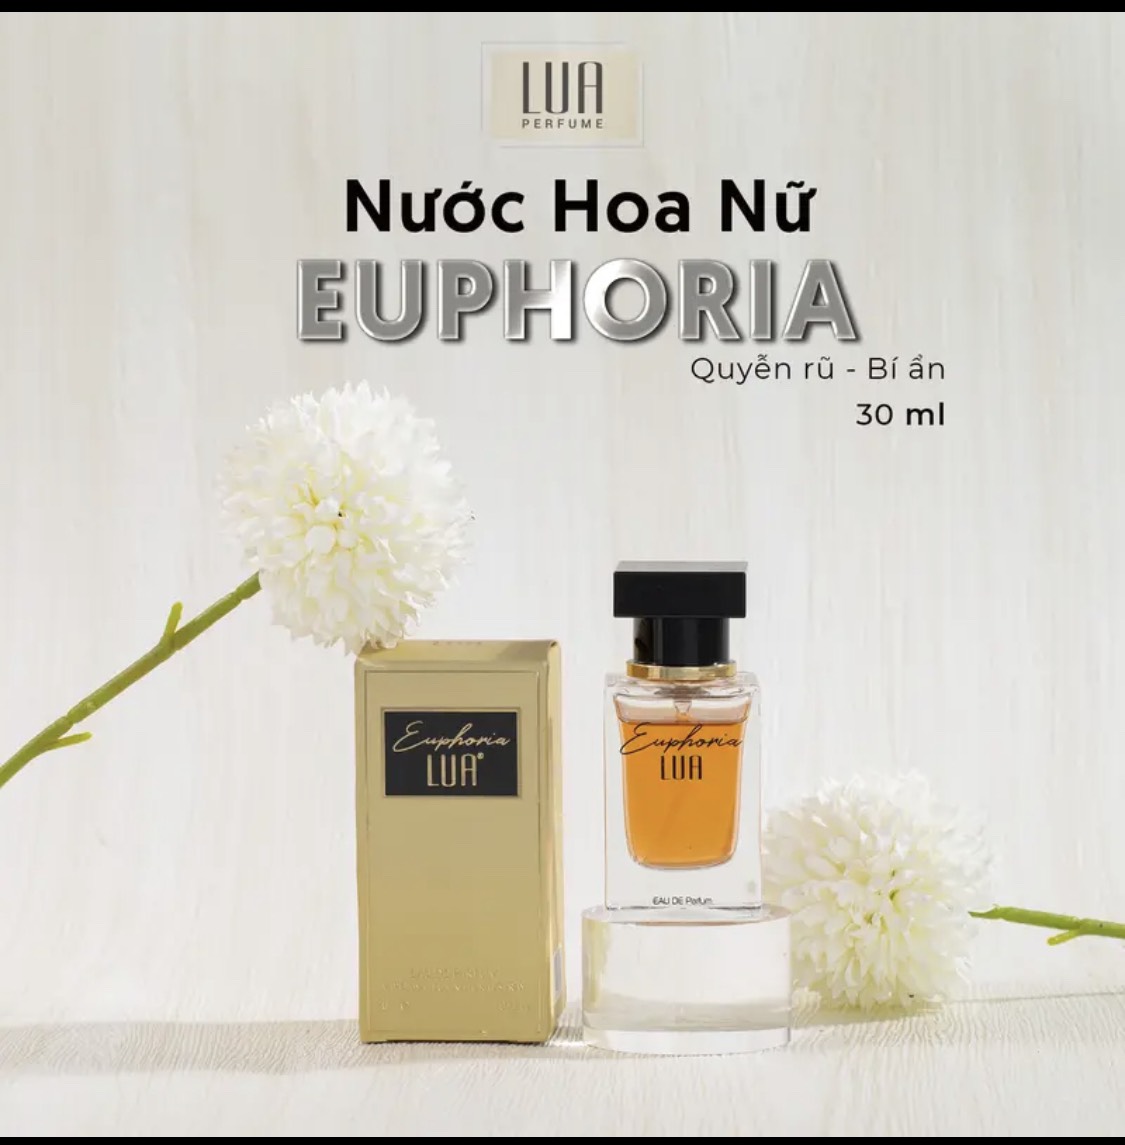 Nước hoa EUPHORIA 30ml Lua Perfume